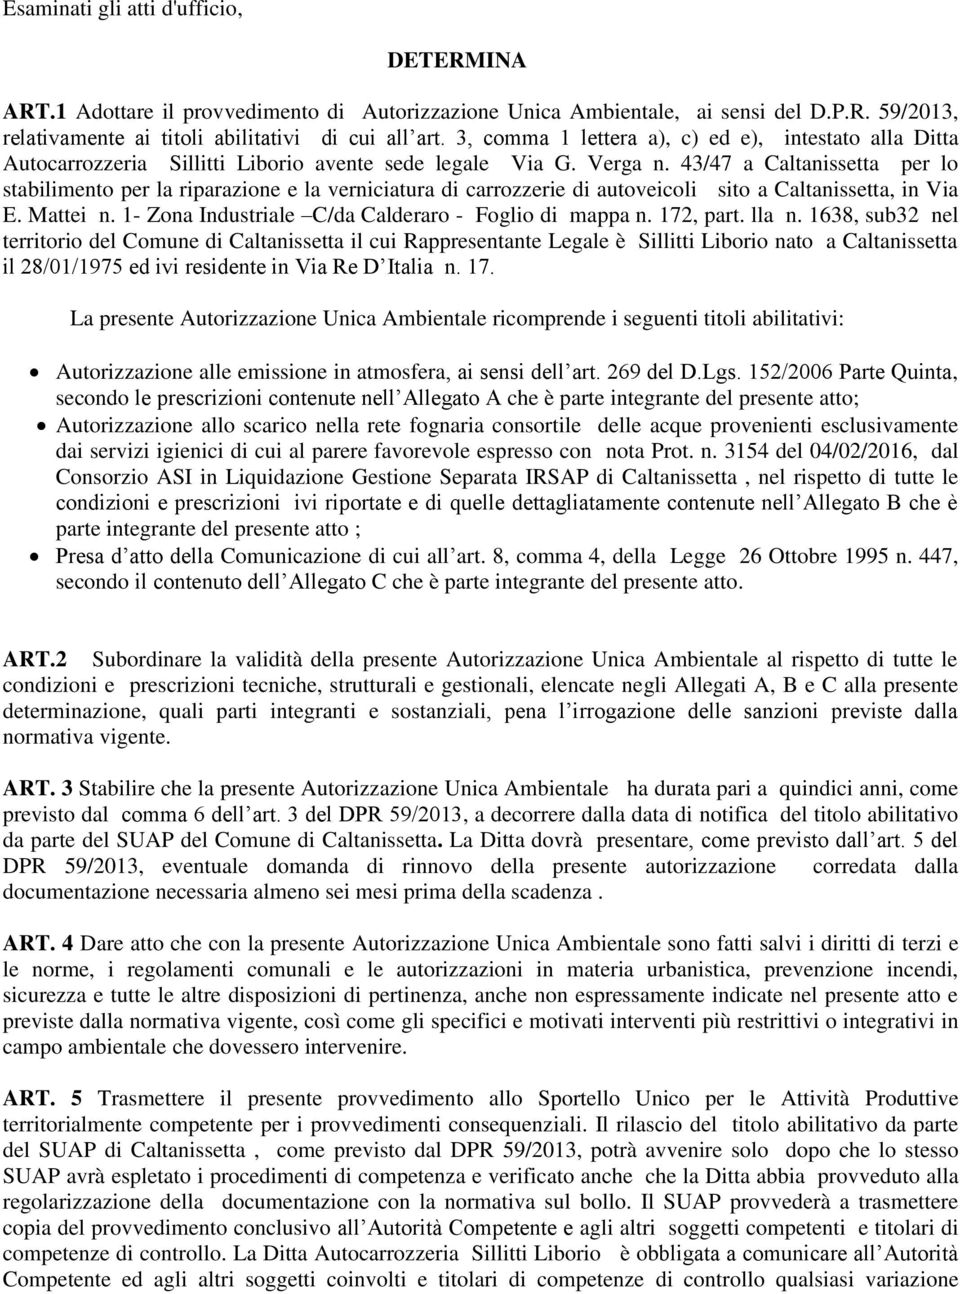 43/47 a Caltanissetta per lo stabilimento per la riparazione e la verniciatura di carrozzerie di autoveicoli sito a Caltanissetta, in Via E. Mattei n.